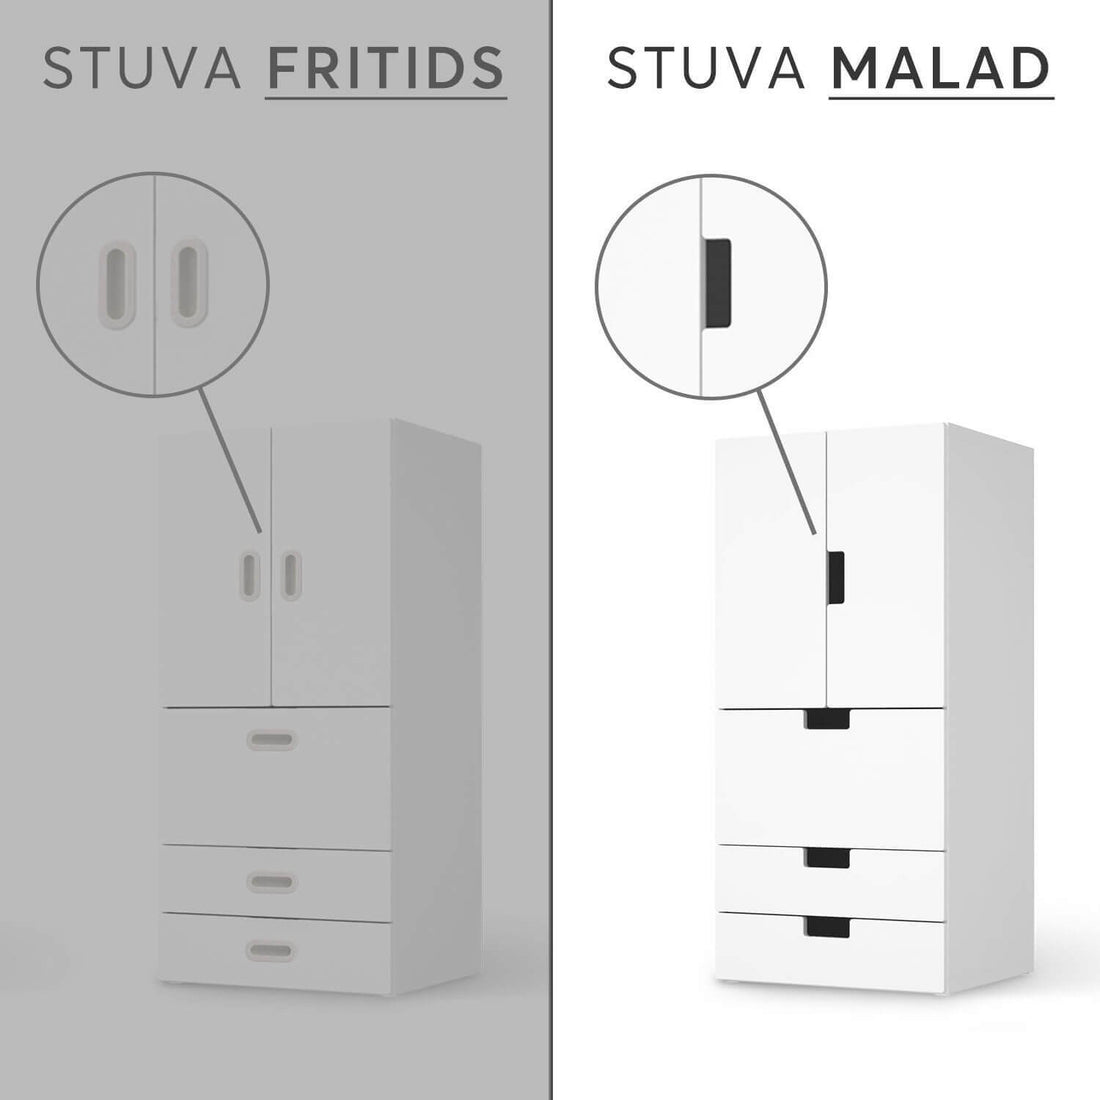 Vergleich IKEA Stuva Malad / Fritids - Bubbles